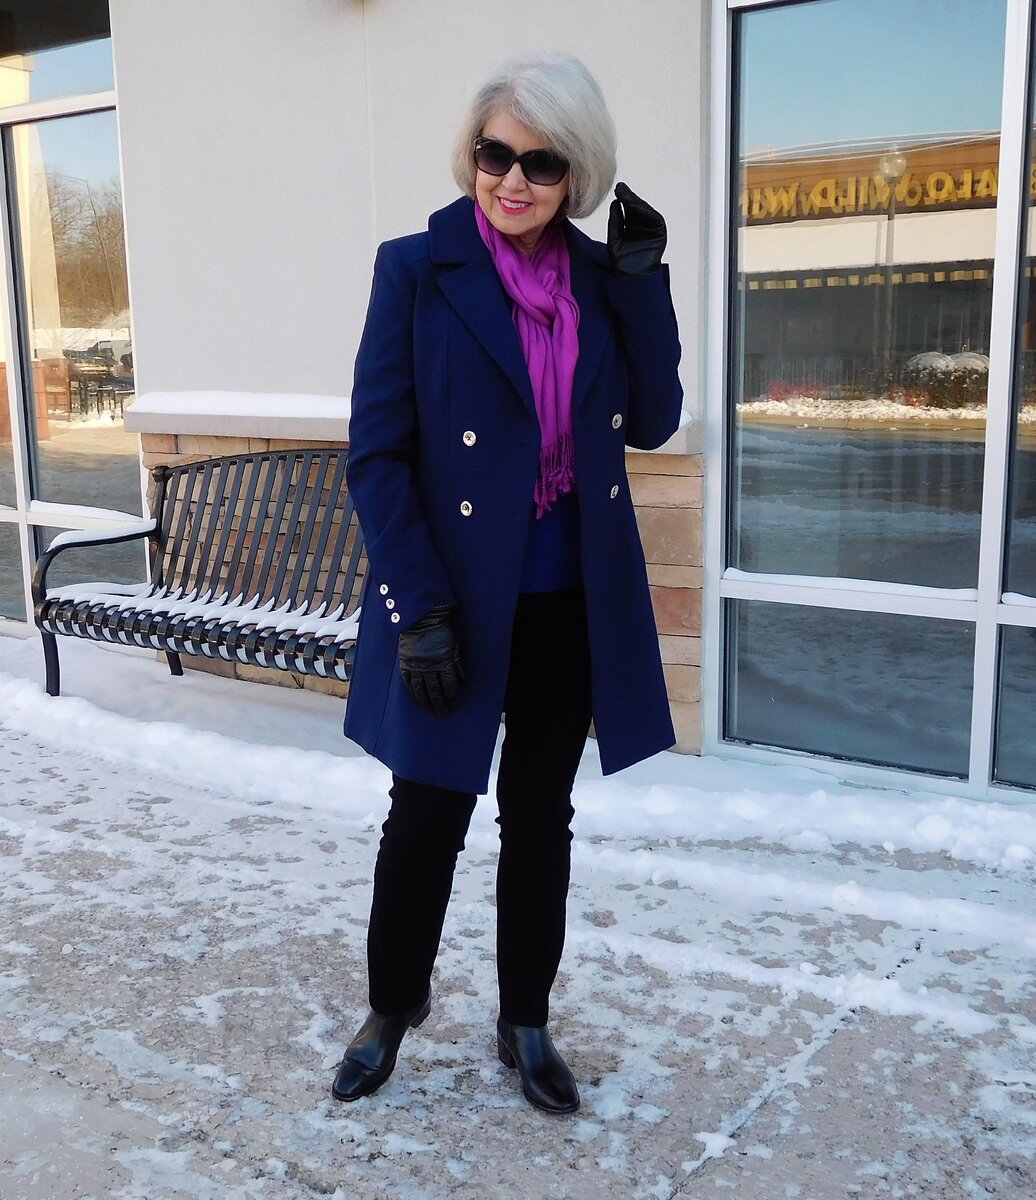 Классные образы от 60-летней модницы Сьюзан Стрит открытых, взято, источниковФото, стиля, можно, черный, стиль, Сьюзан, который, нарядах, оттенки, другие, разбавляют, изюминка, преимущественно, фигуры, учетом, подобрана, Одежда, светлые